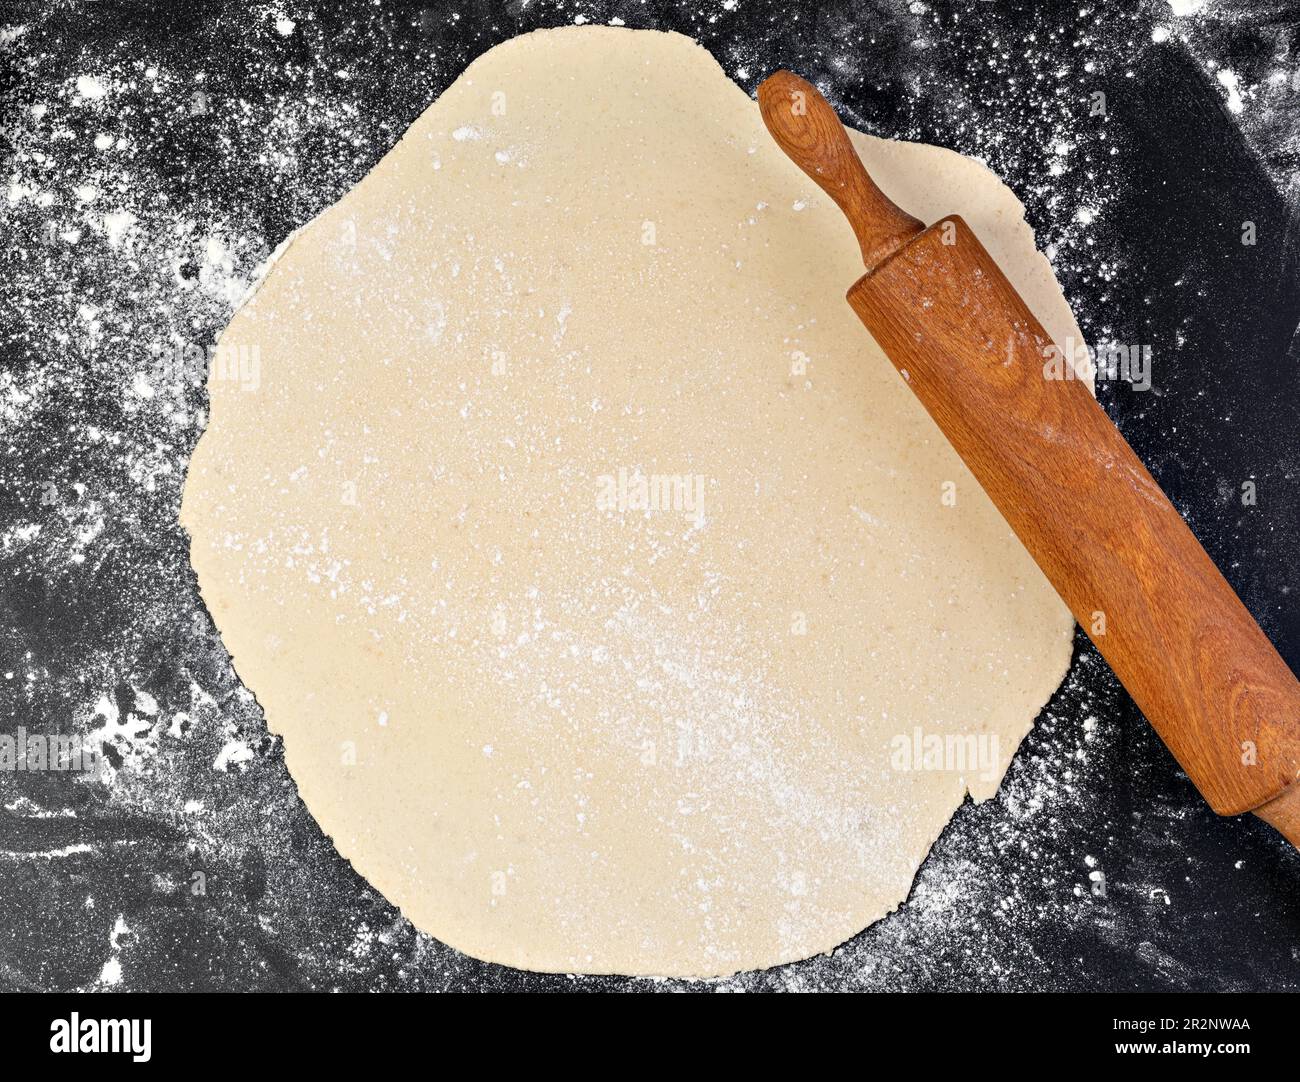 Préparation de la pâte. Le rollPIN avec de la farine sur un fond sombre. Espace libre pour le texte Banque D'Images